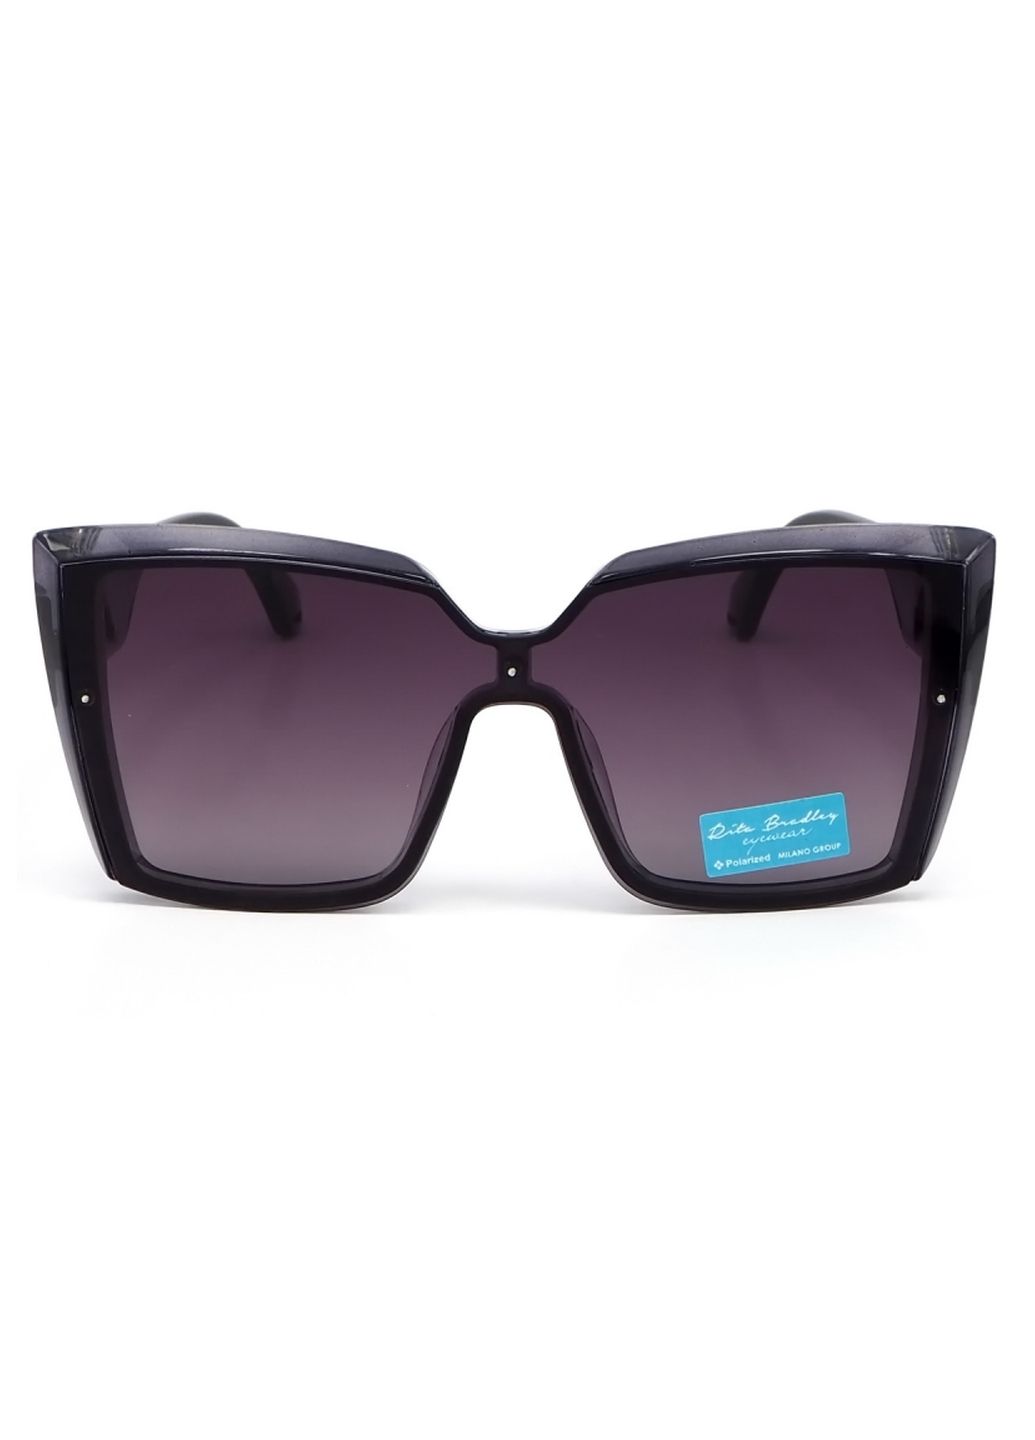 Купить Женские солнцезащитные очки Rita Bradley с поляризацией RB725 112048 в интернет-магазине